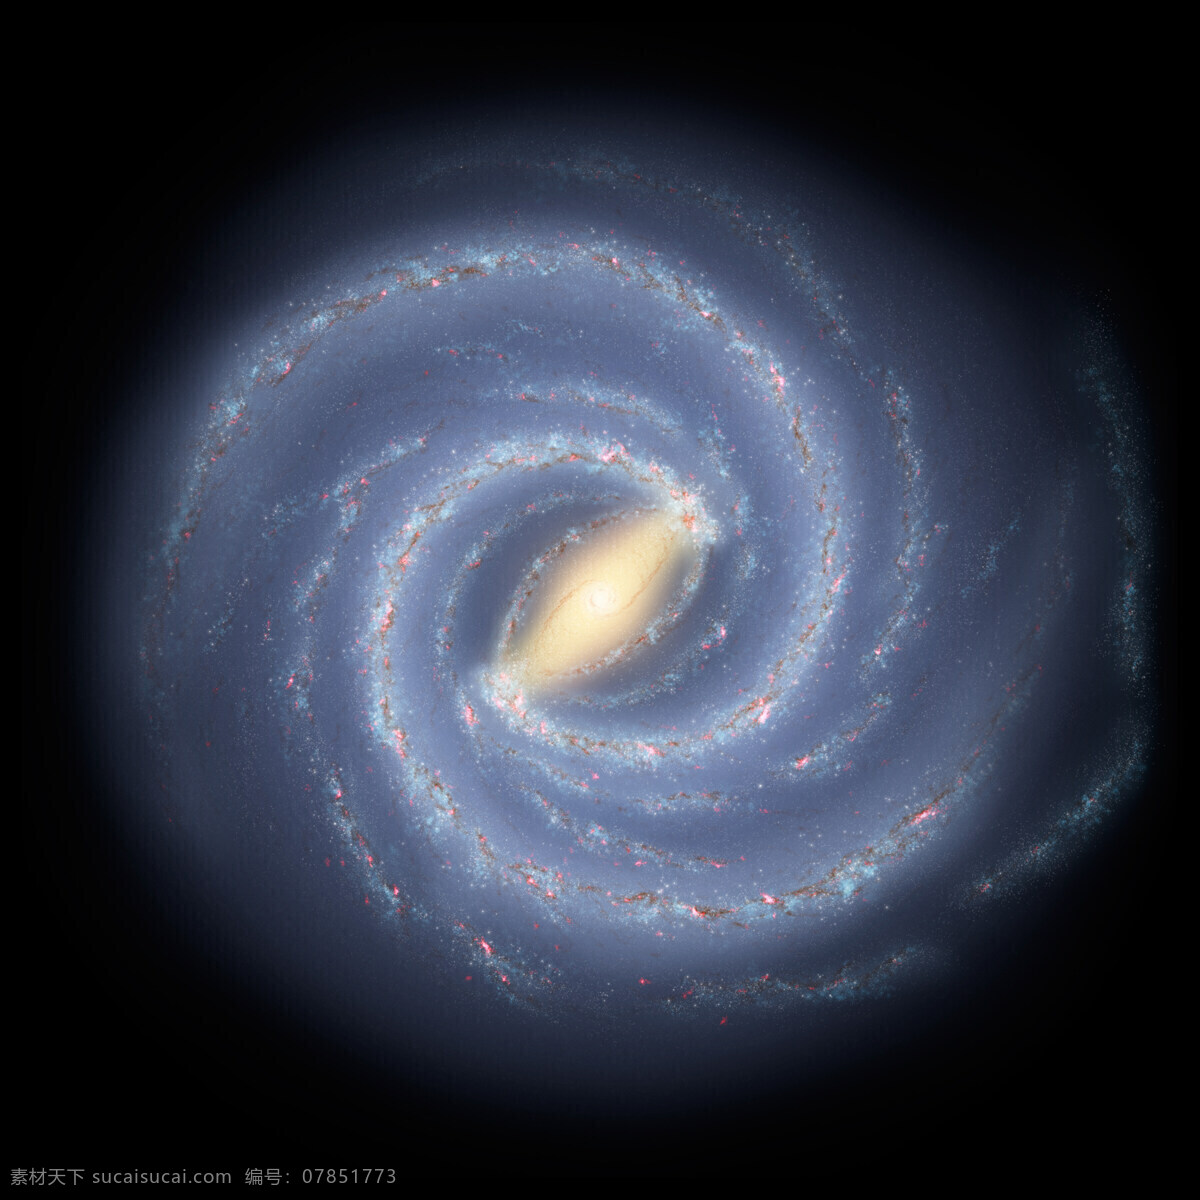 银河系图片 银河系 星系 银盘 旋臂 银冕 自然景观